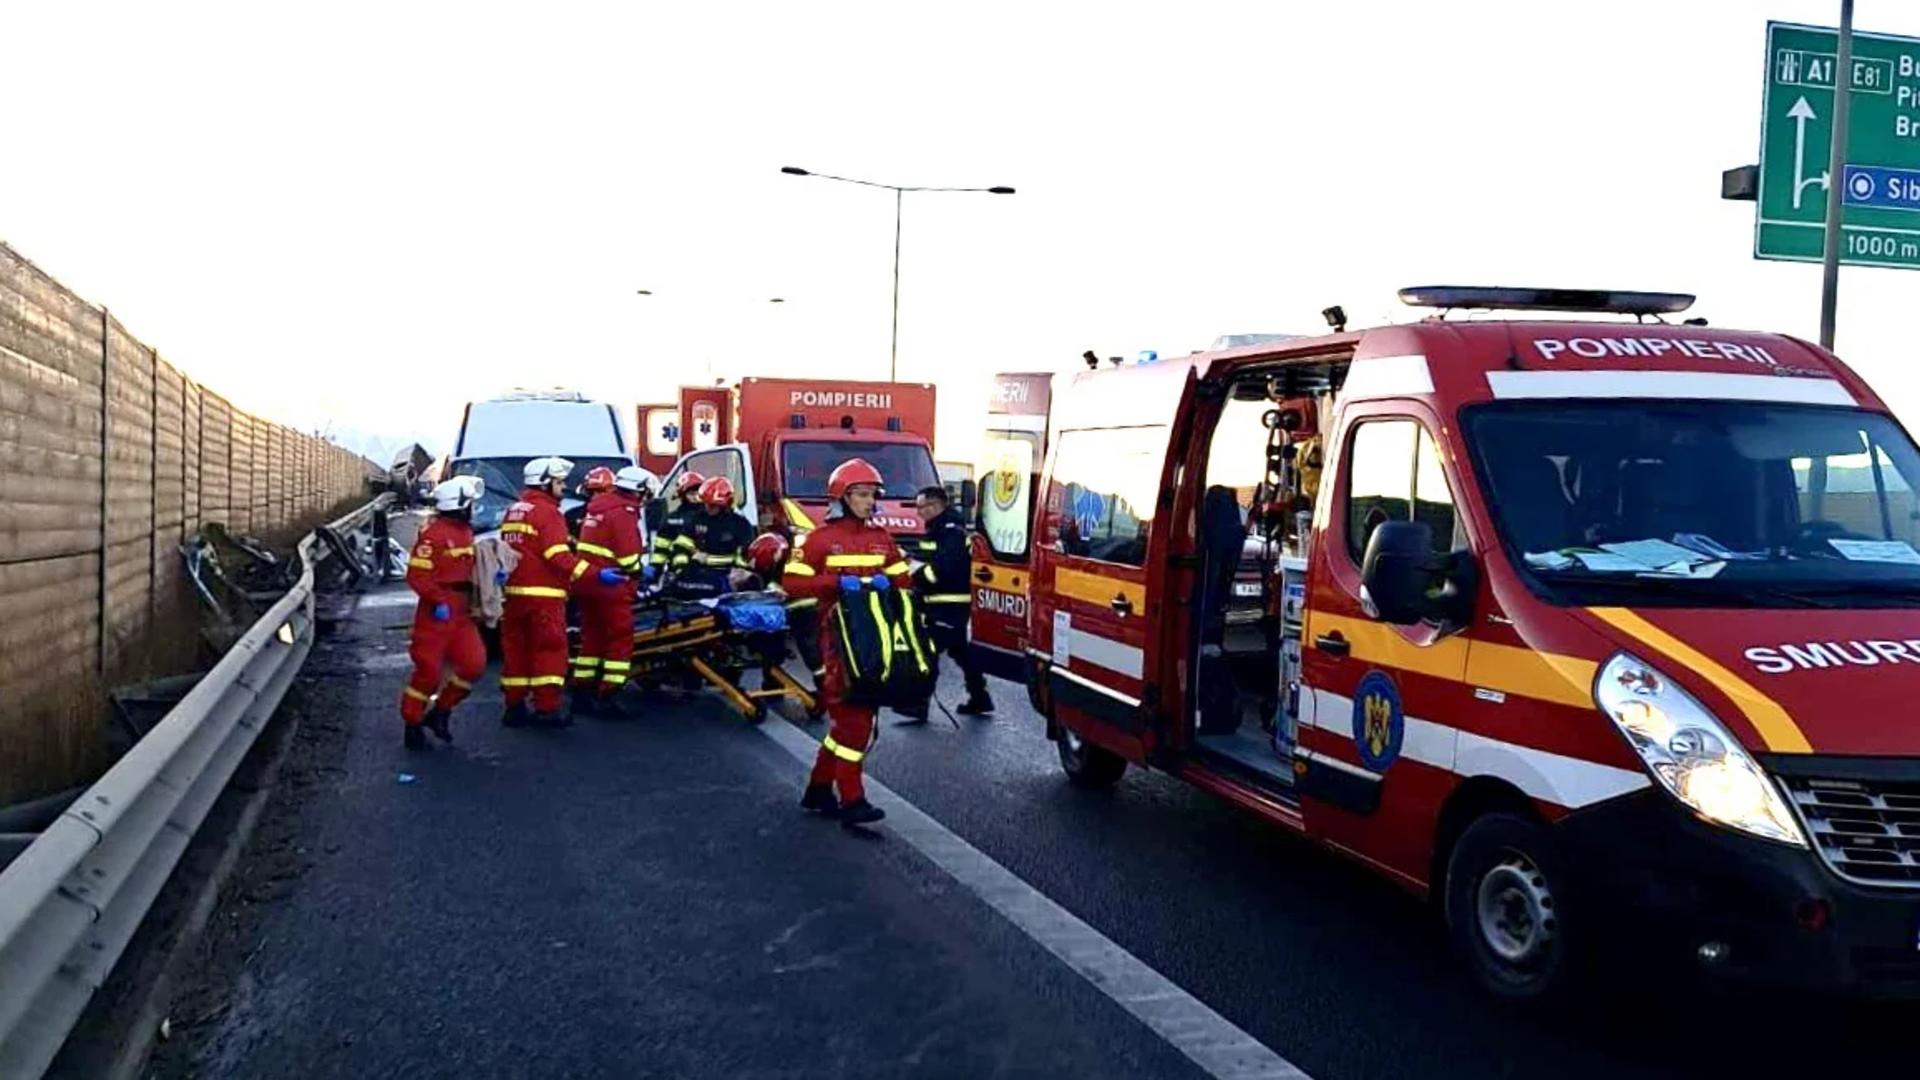 Plan Roșu de intervenție în Călărași, după ce două autoturisme s-au ciocnit. 4 persoane rănite, trafic blocat pe DN4